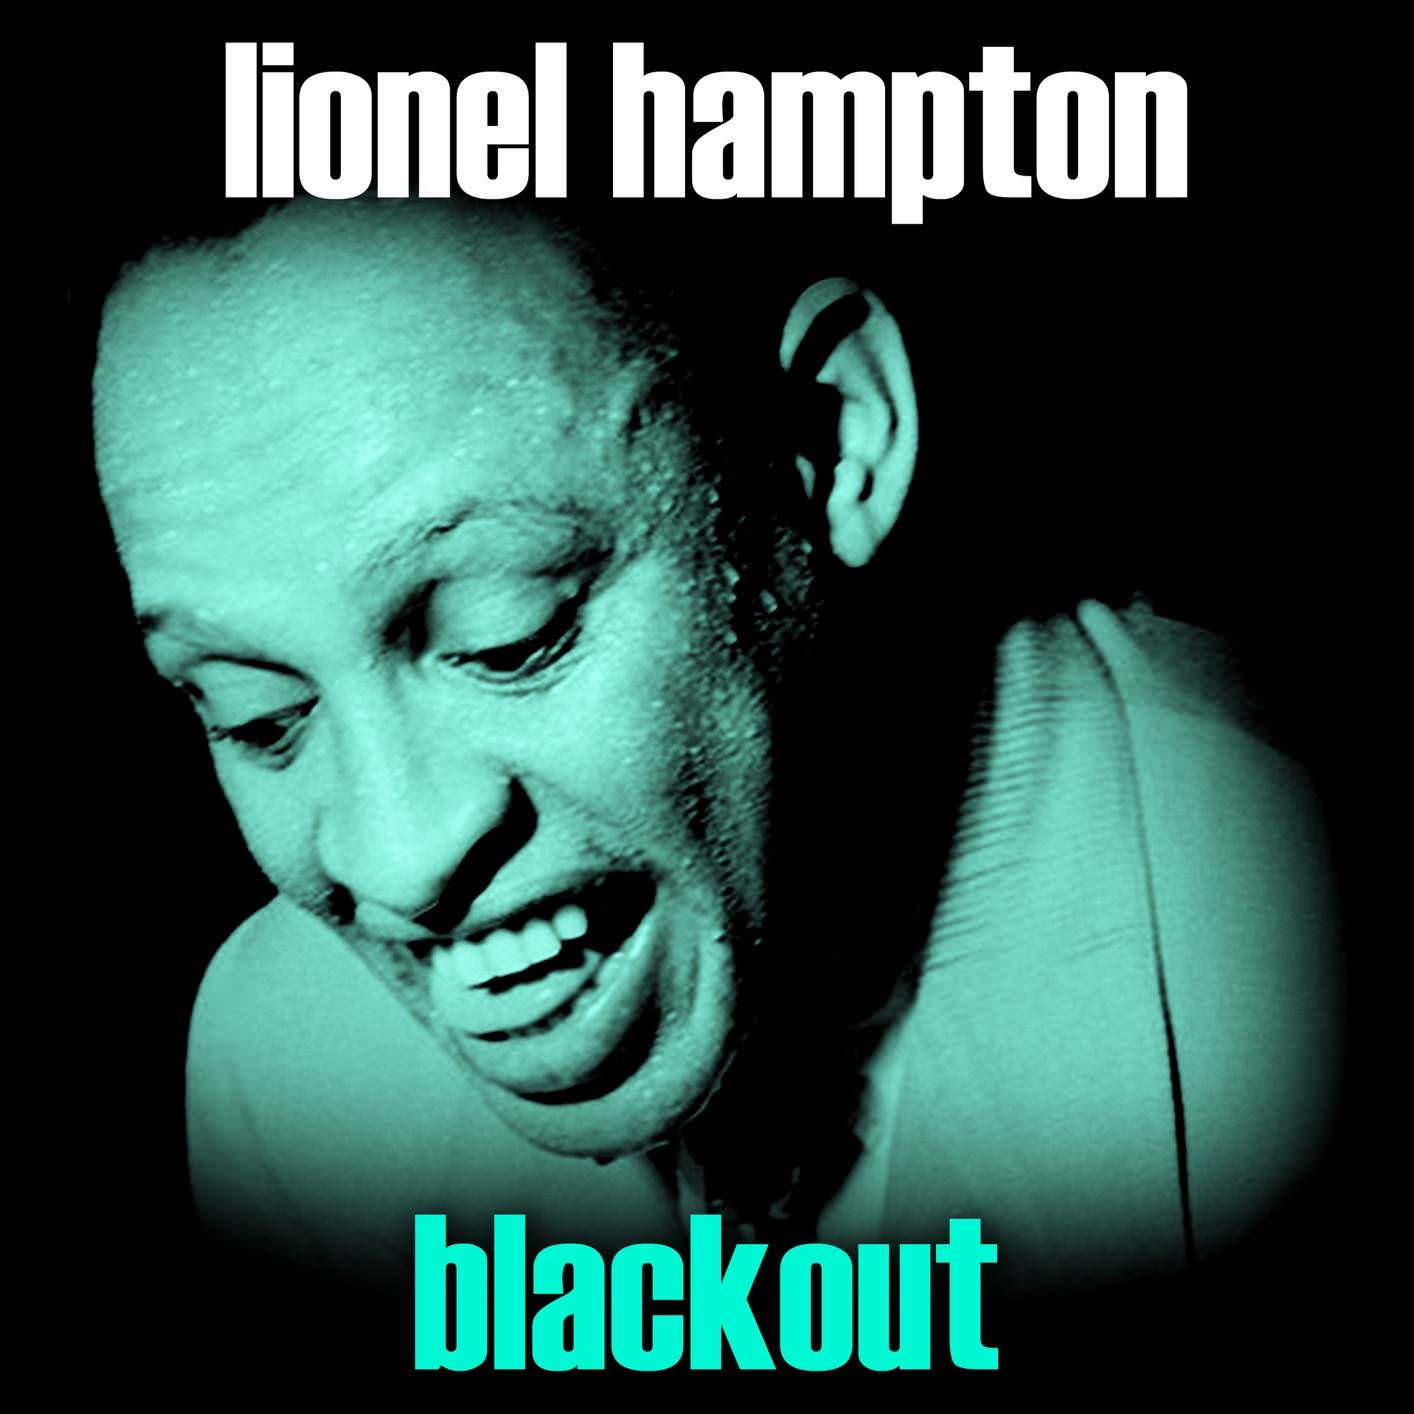 Lionel Hampton – Blackout (Remastered) (2018) [FLAC 24bit/96kHz]